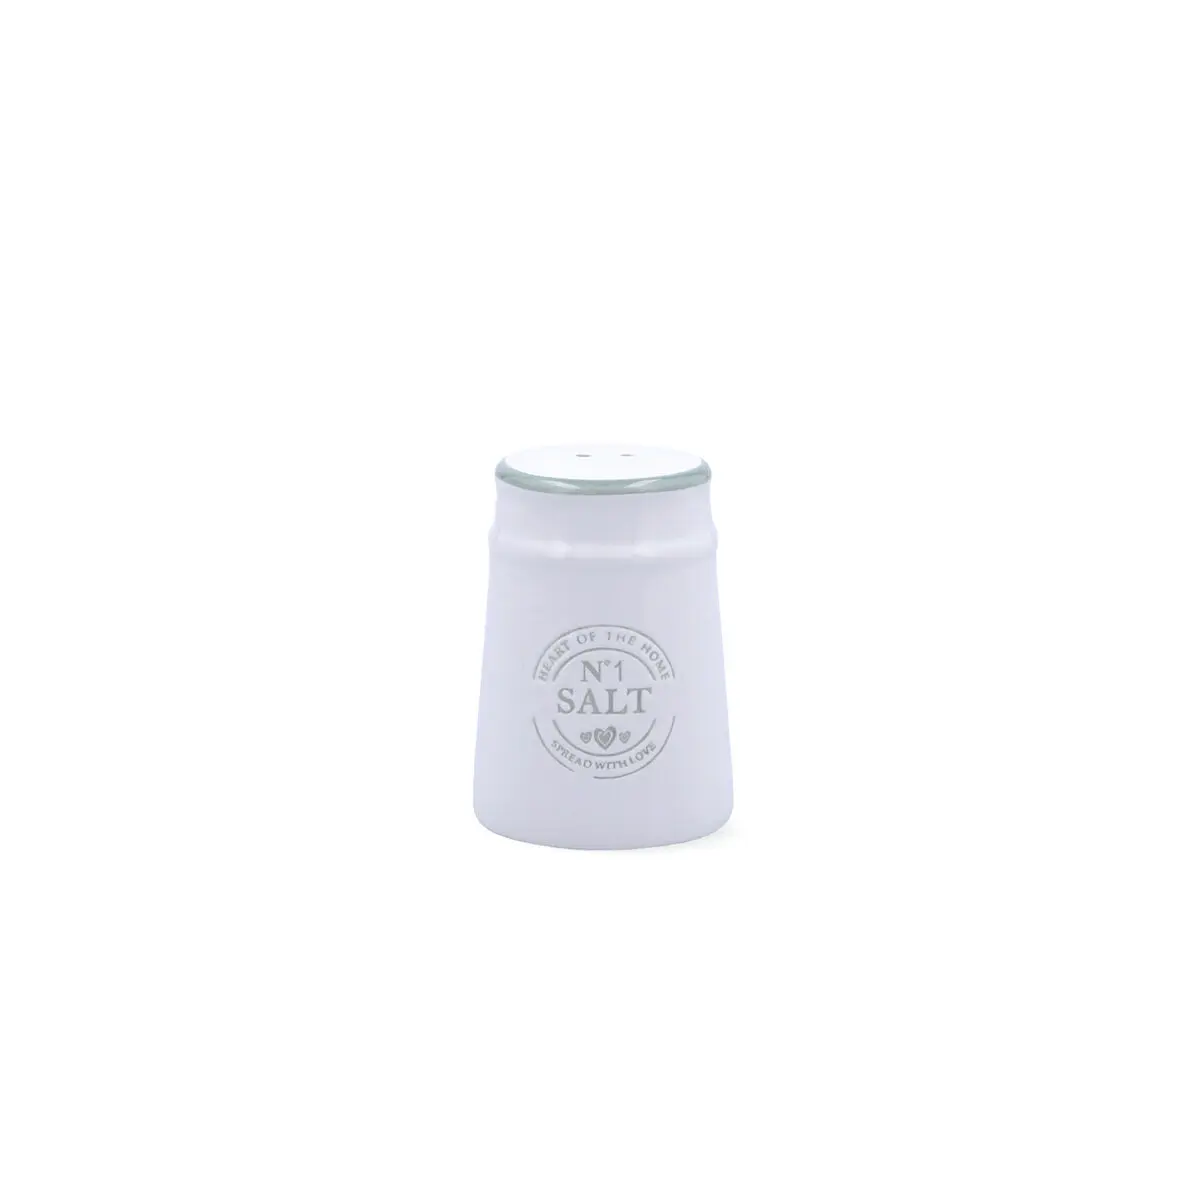 Saliera Quid Ozon Bianco Ceramica Naturale 6,1 x 6,1 x 8,7 cm